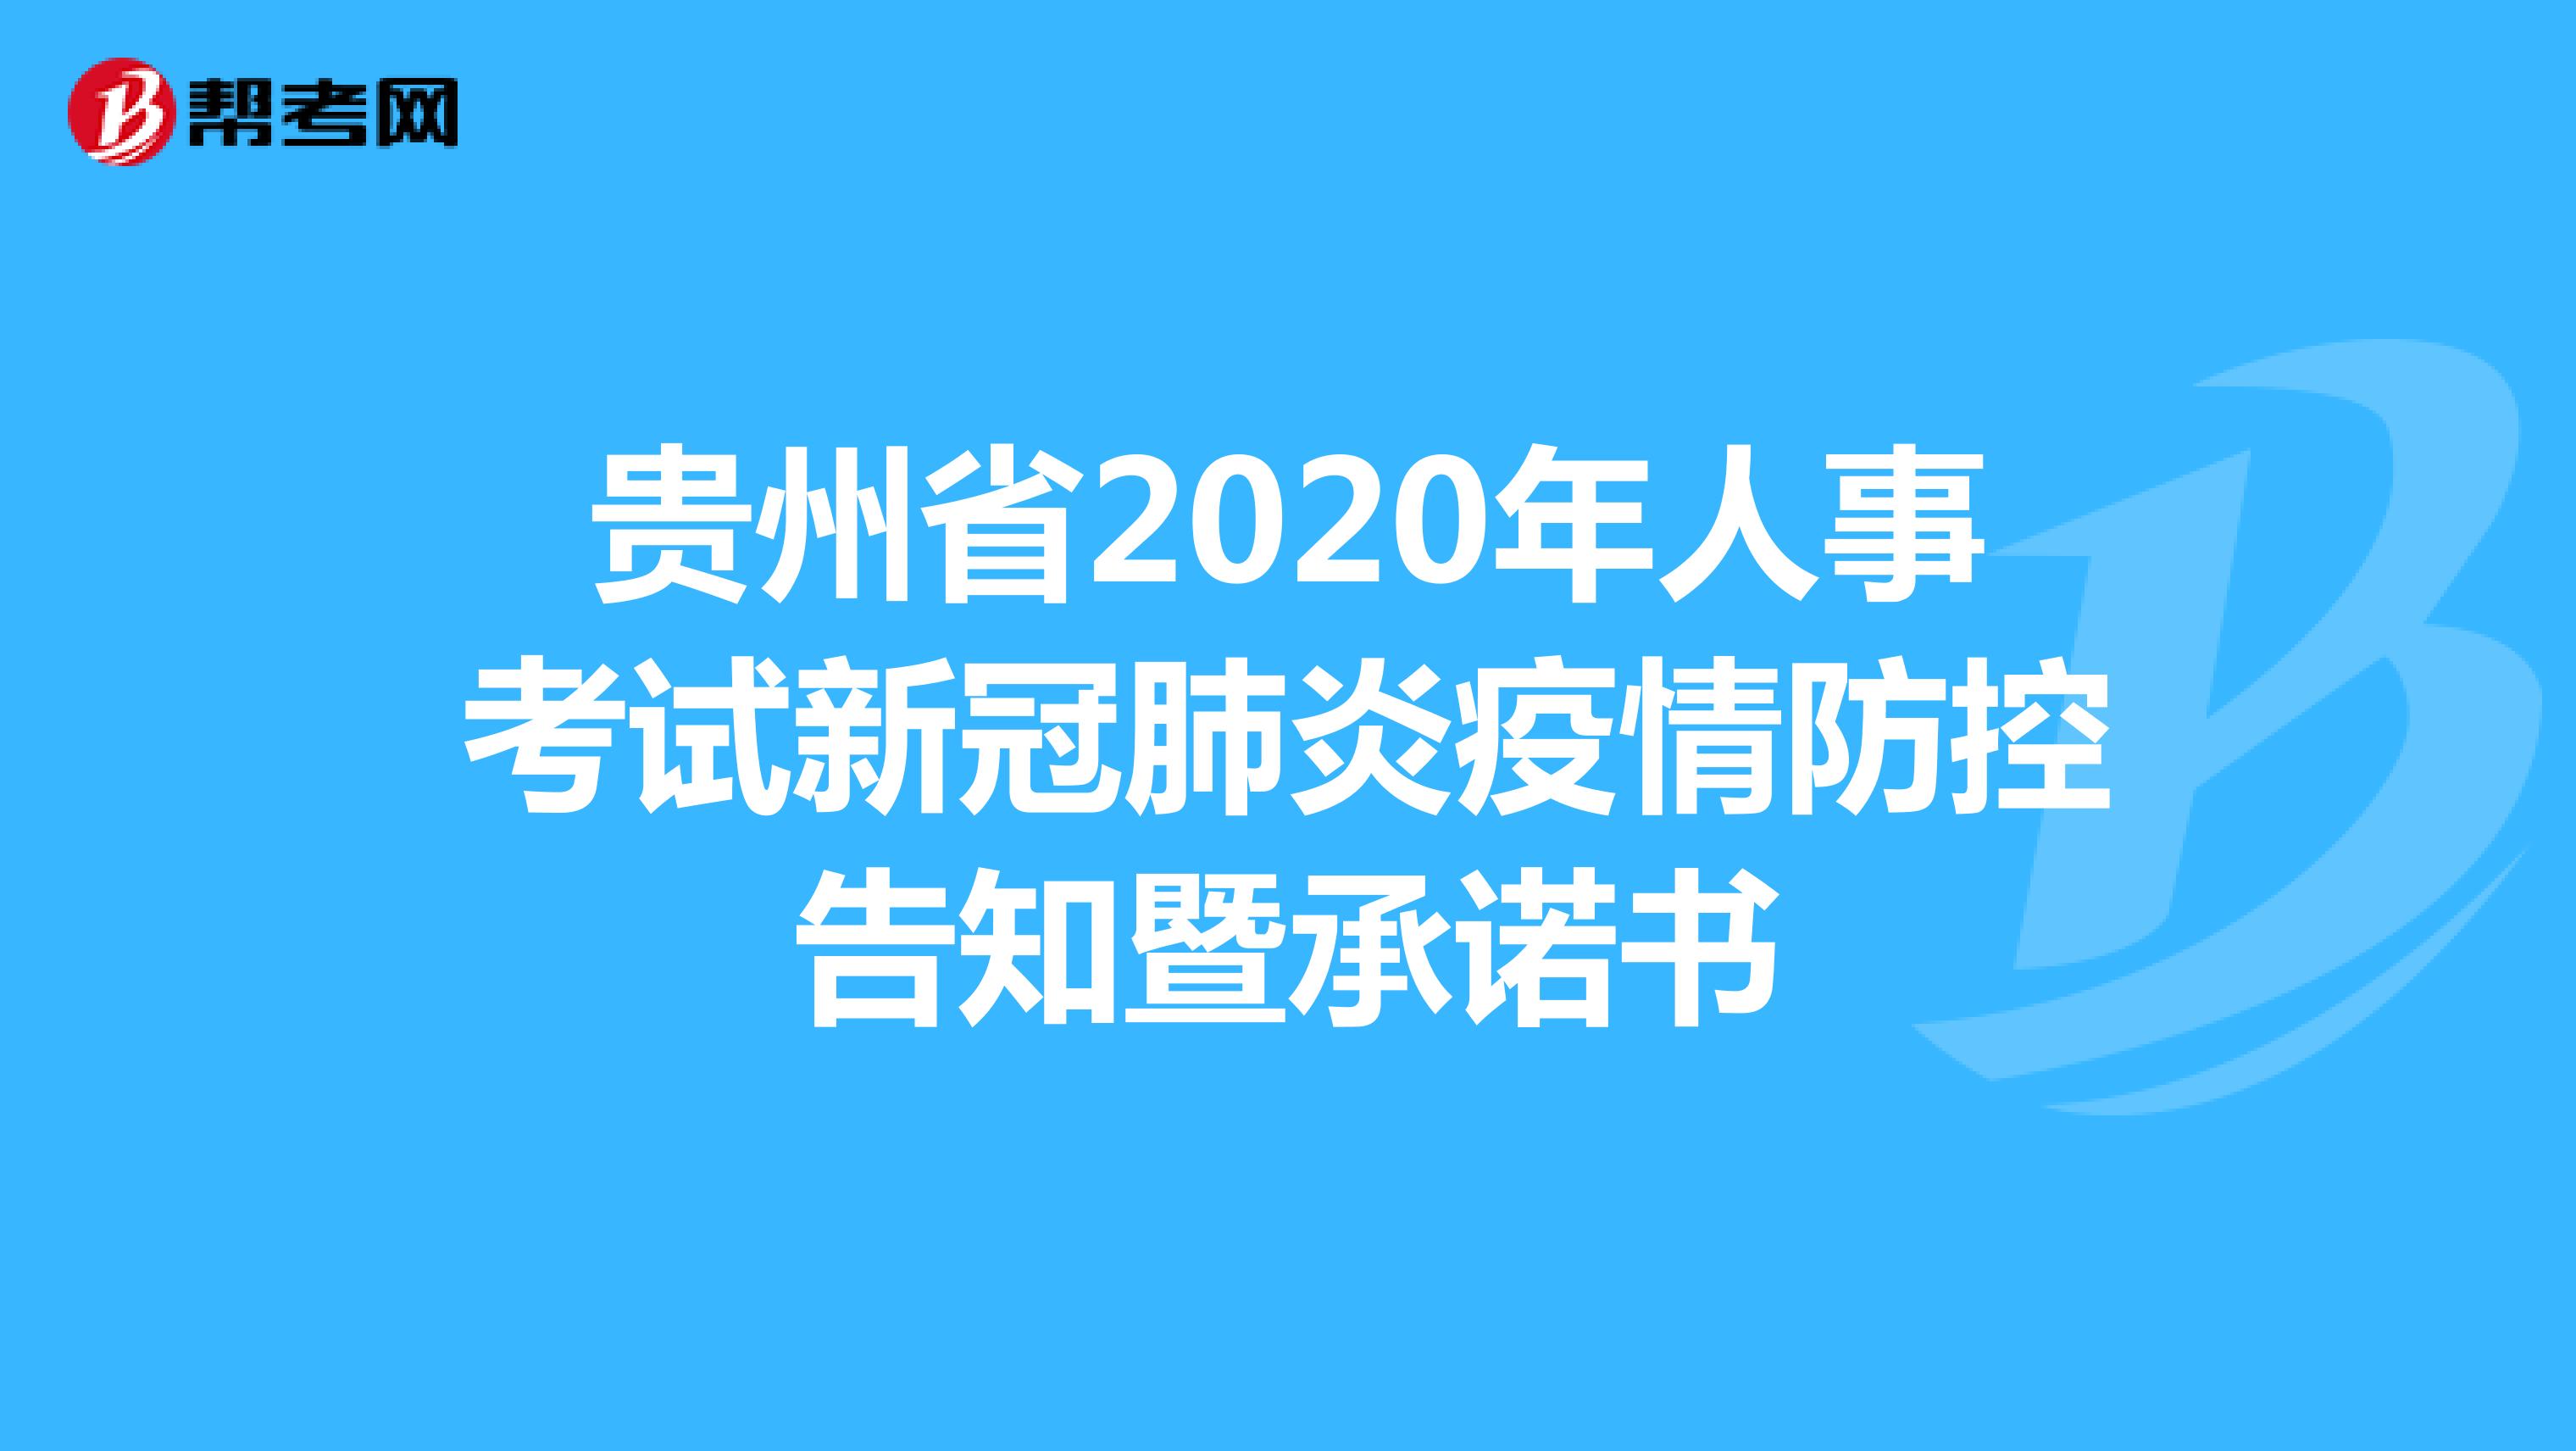 贵州省2020年人事考试新冠肺炎疫情防控告知暨承诺书